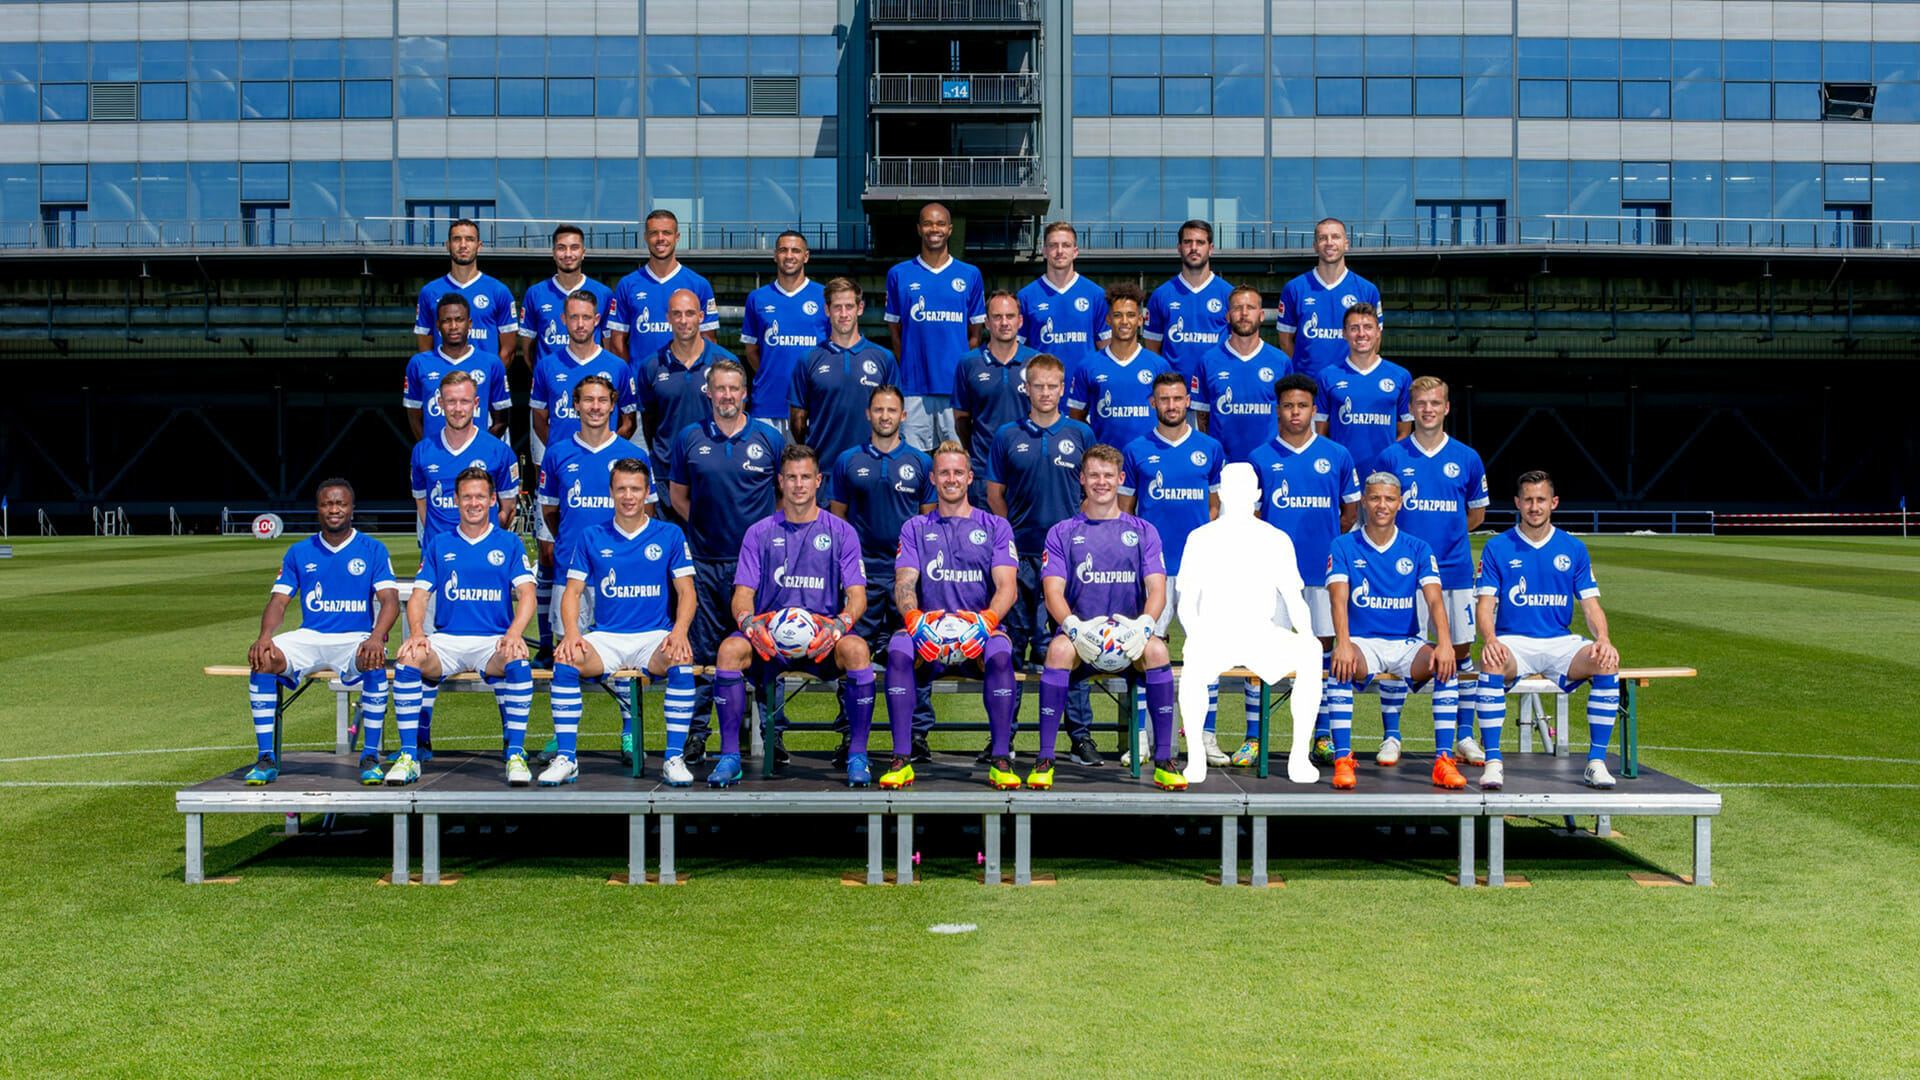 Veltins-Mannschaftsfoto auf Schalke